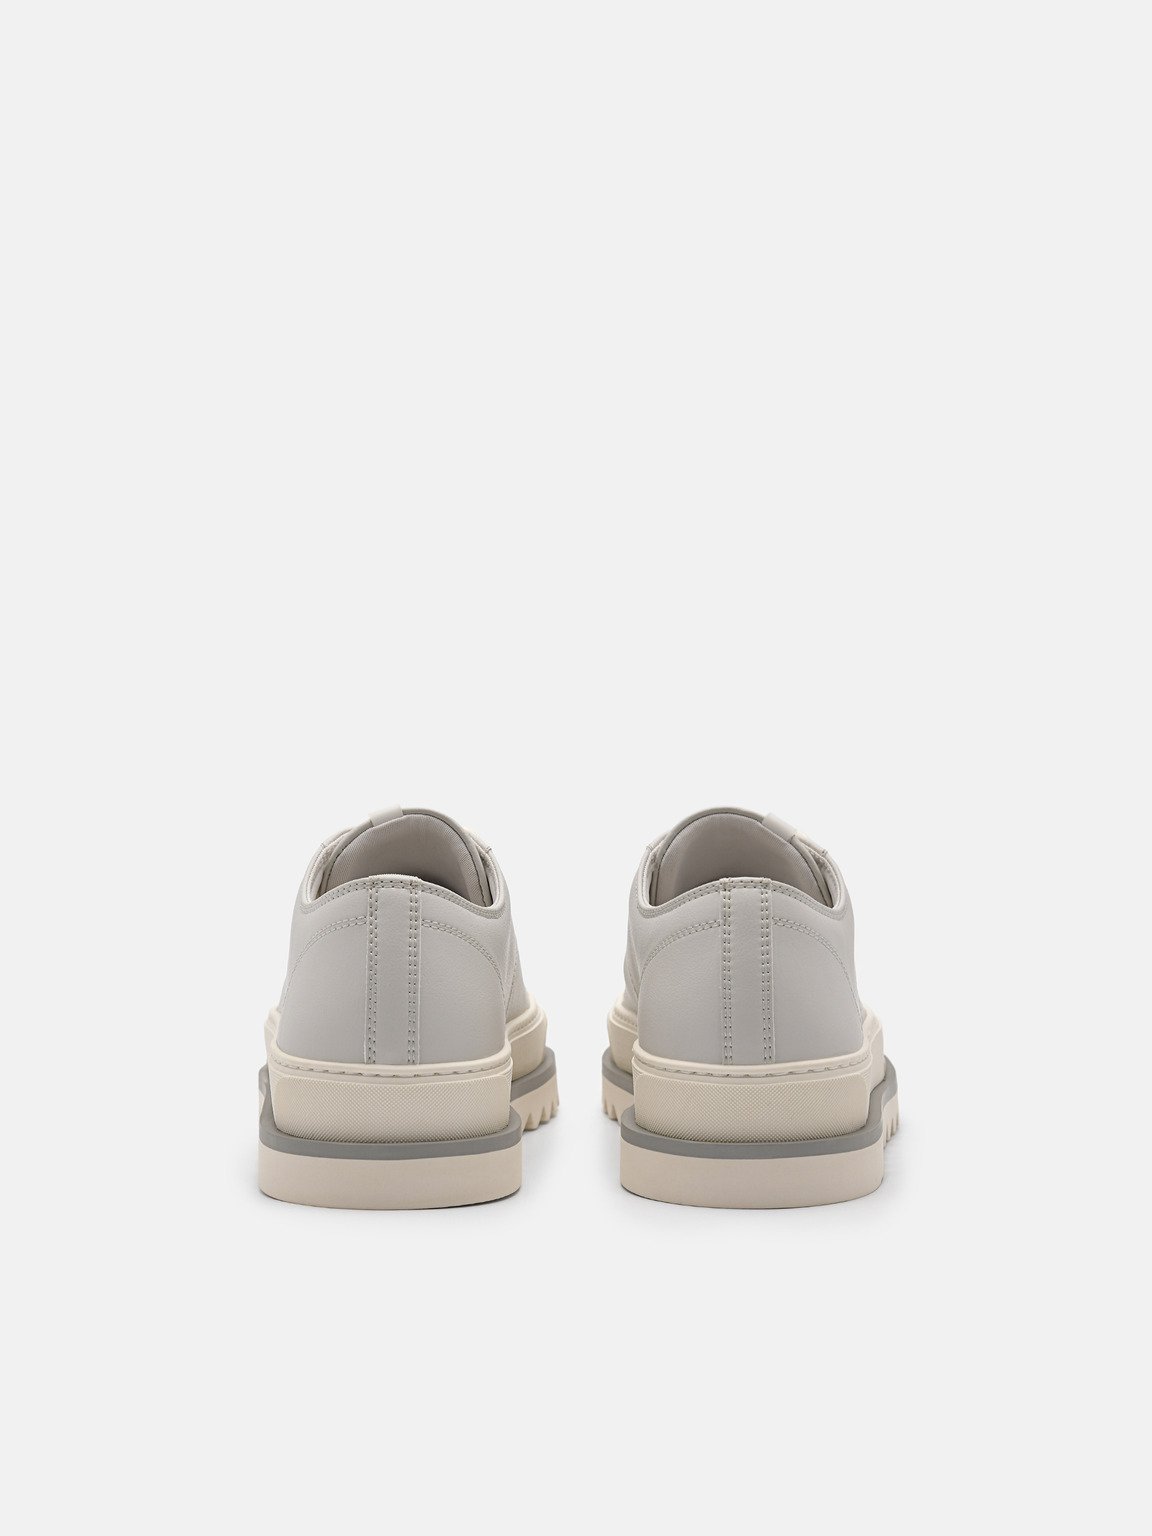 Owen Court Sneakers, Light Grey